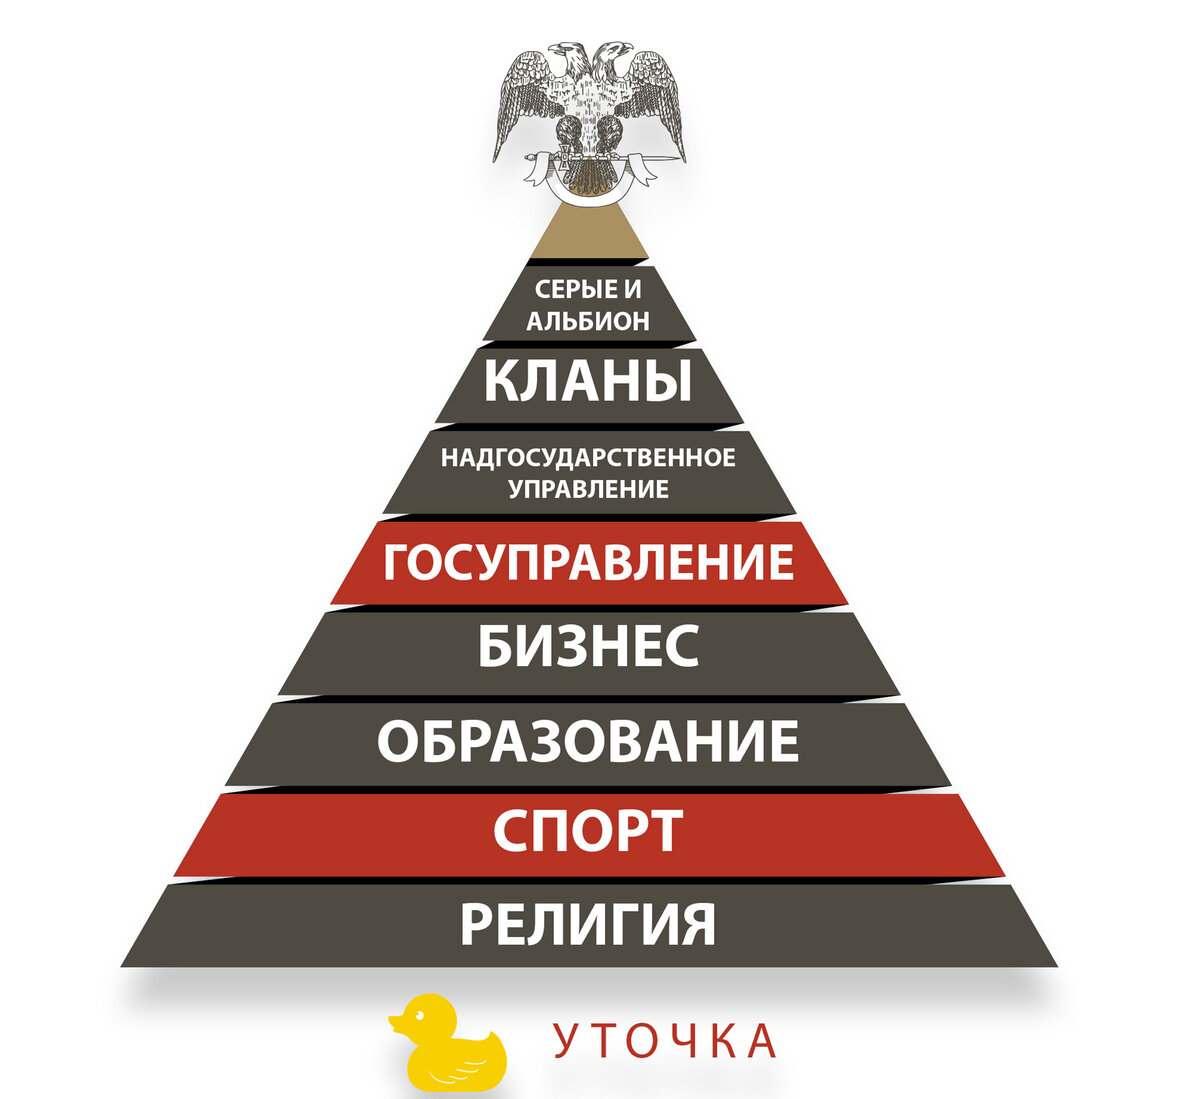 Будем миром управлять. Пирамида управления миром. 6 Инструментов управления миром. Мировой пирамида управления миром евреи.